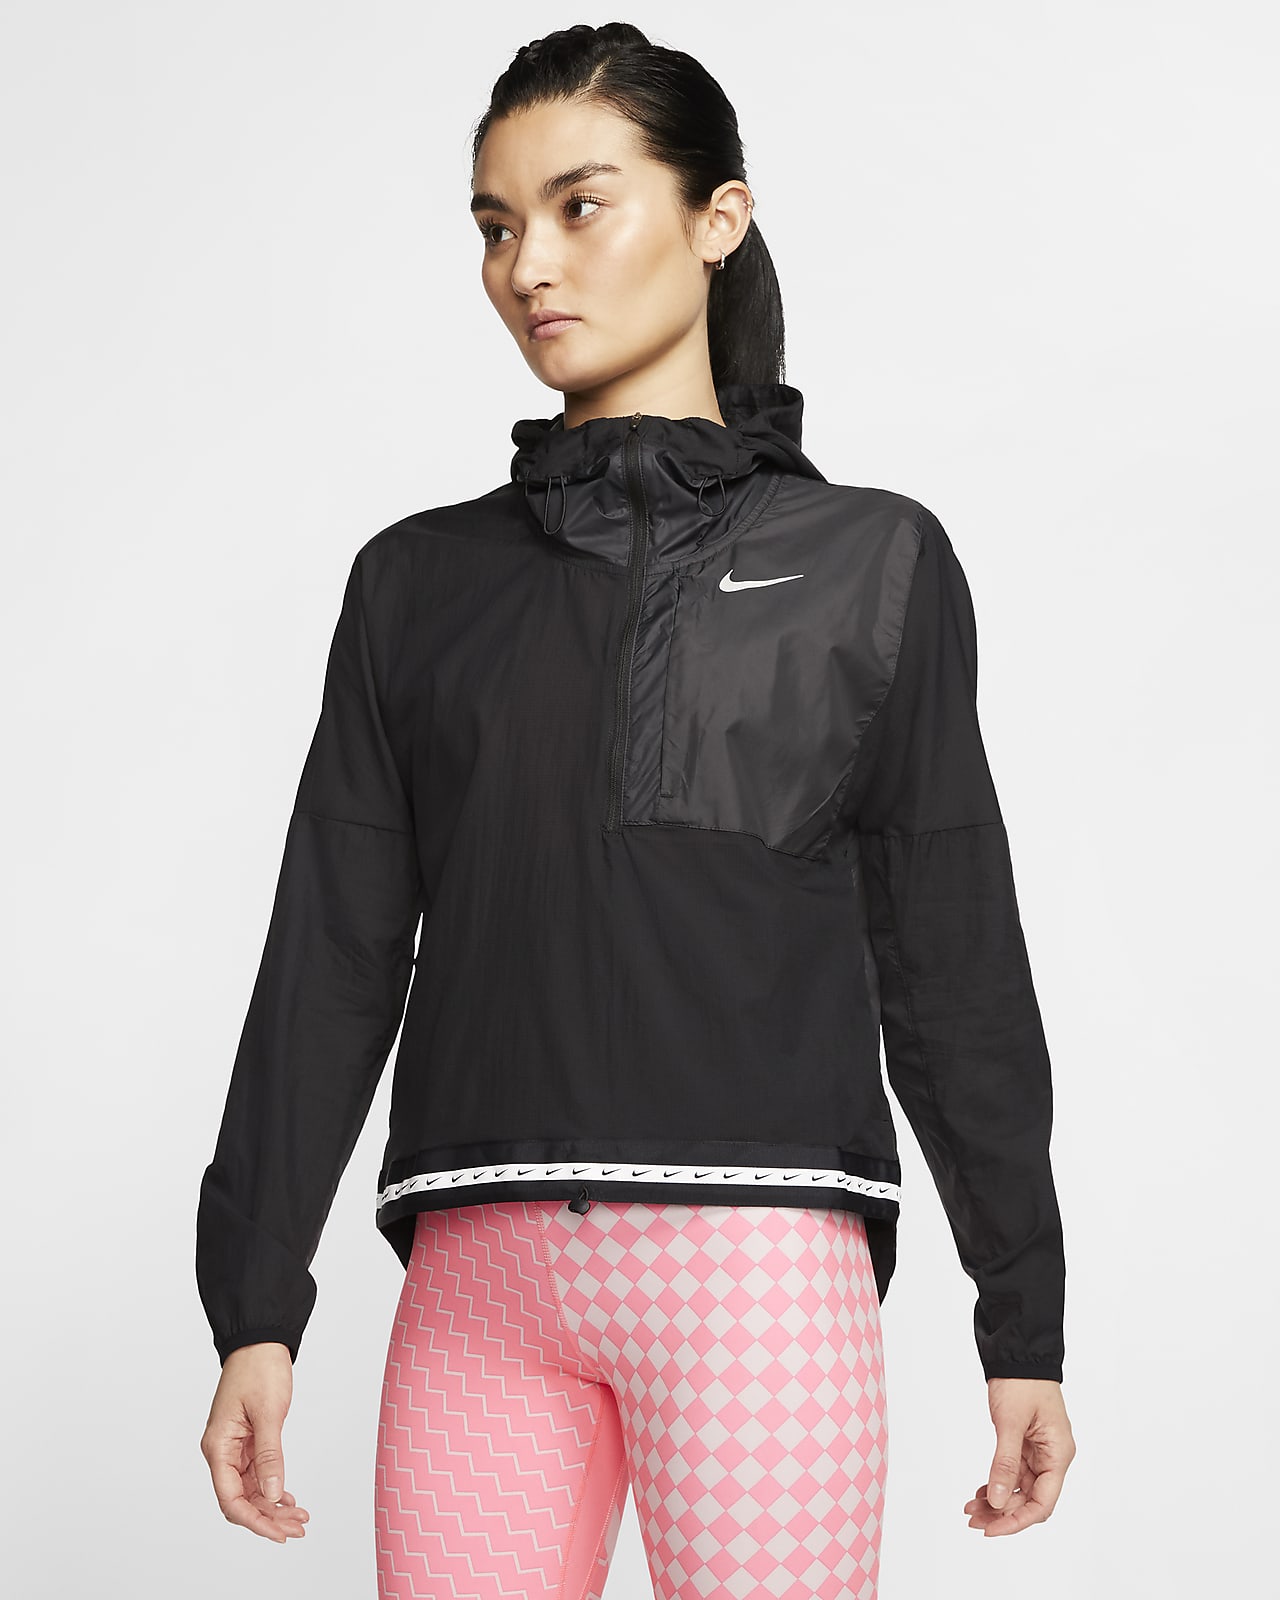 เสื้อแจ็คเก็ตวิ่งน้ำหนักเบาผู้หญิง Nike